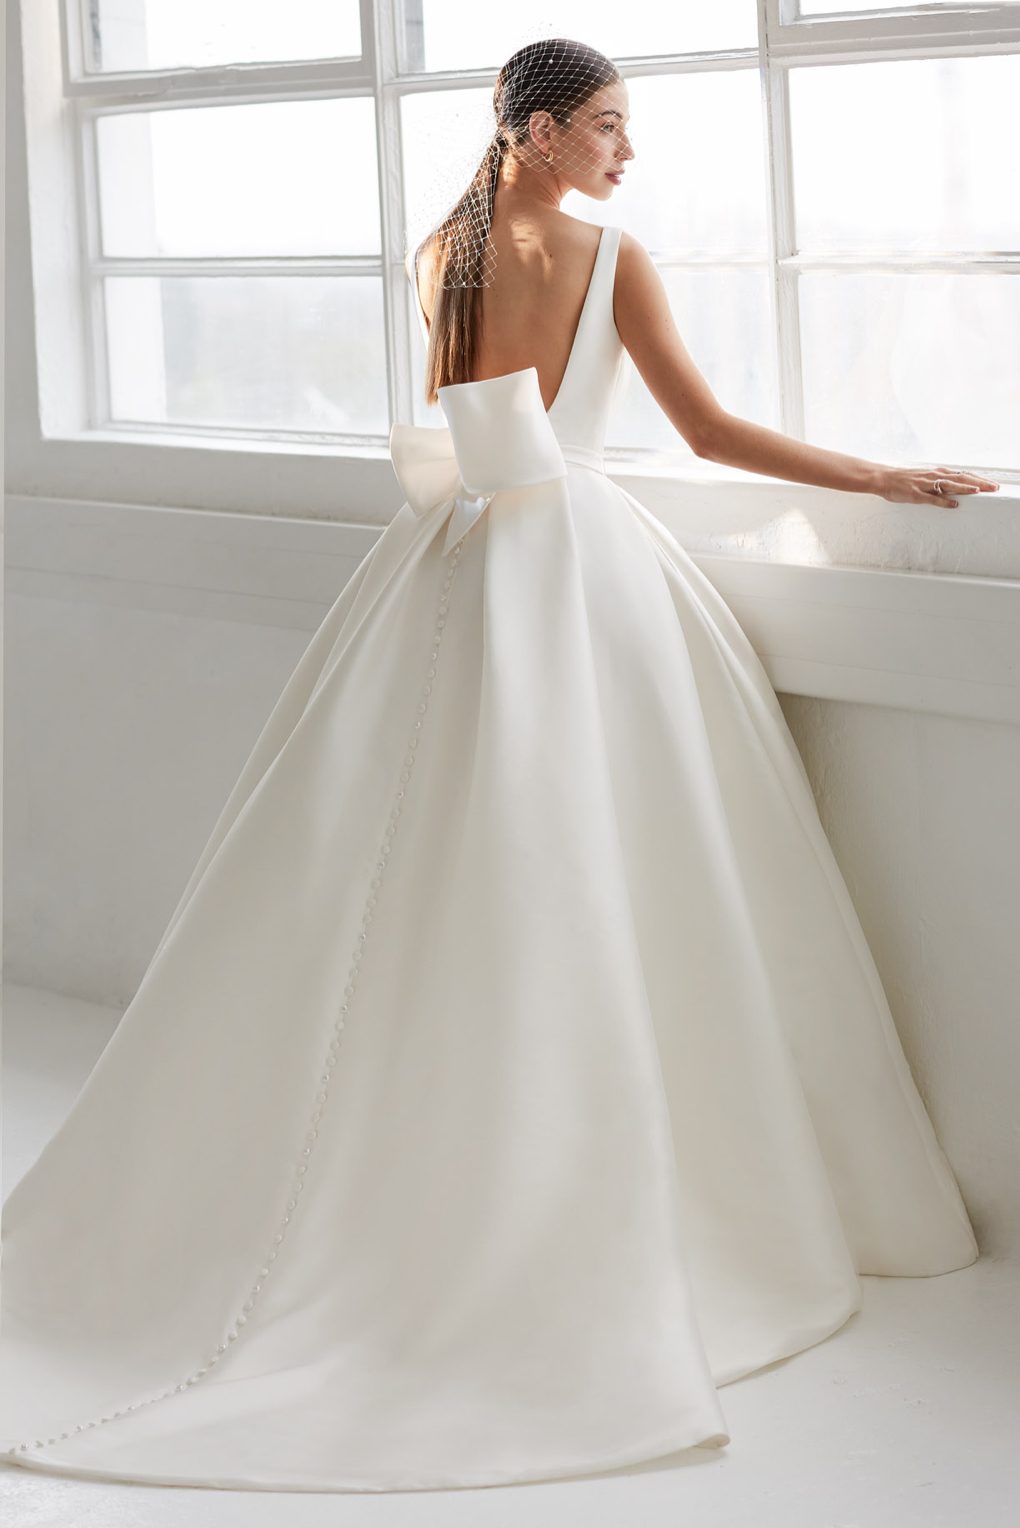 Imogen wedding dress by Ellis